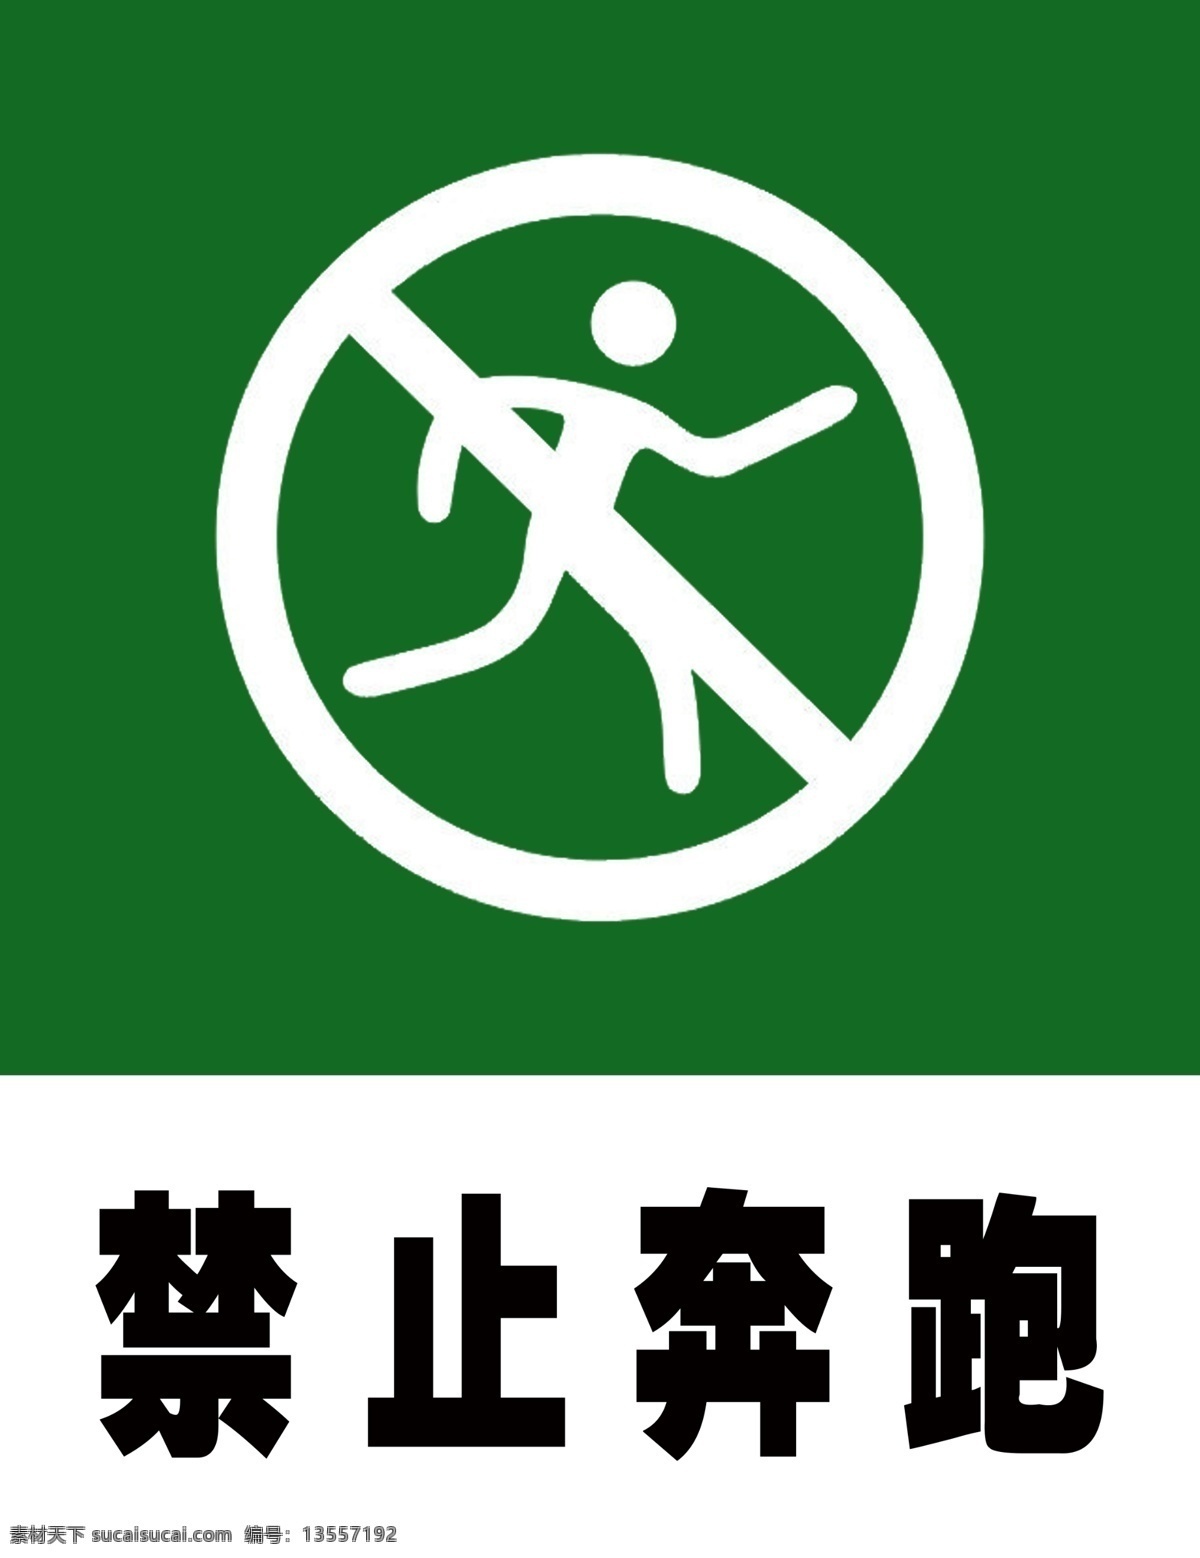 公共标志 禁止奔跑量图 矢量图 禁止奔跑 分层